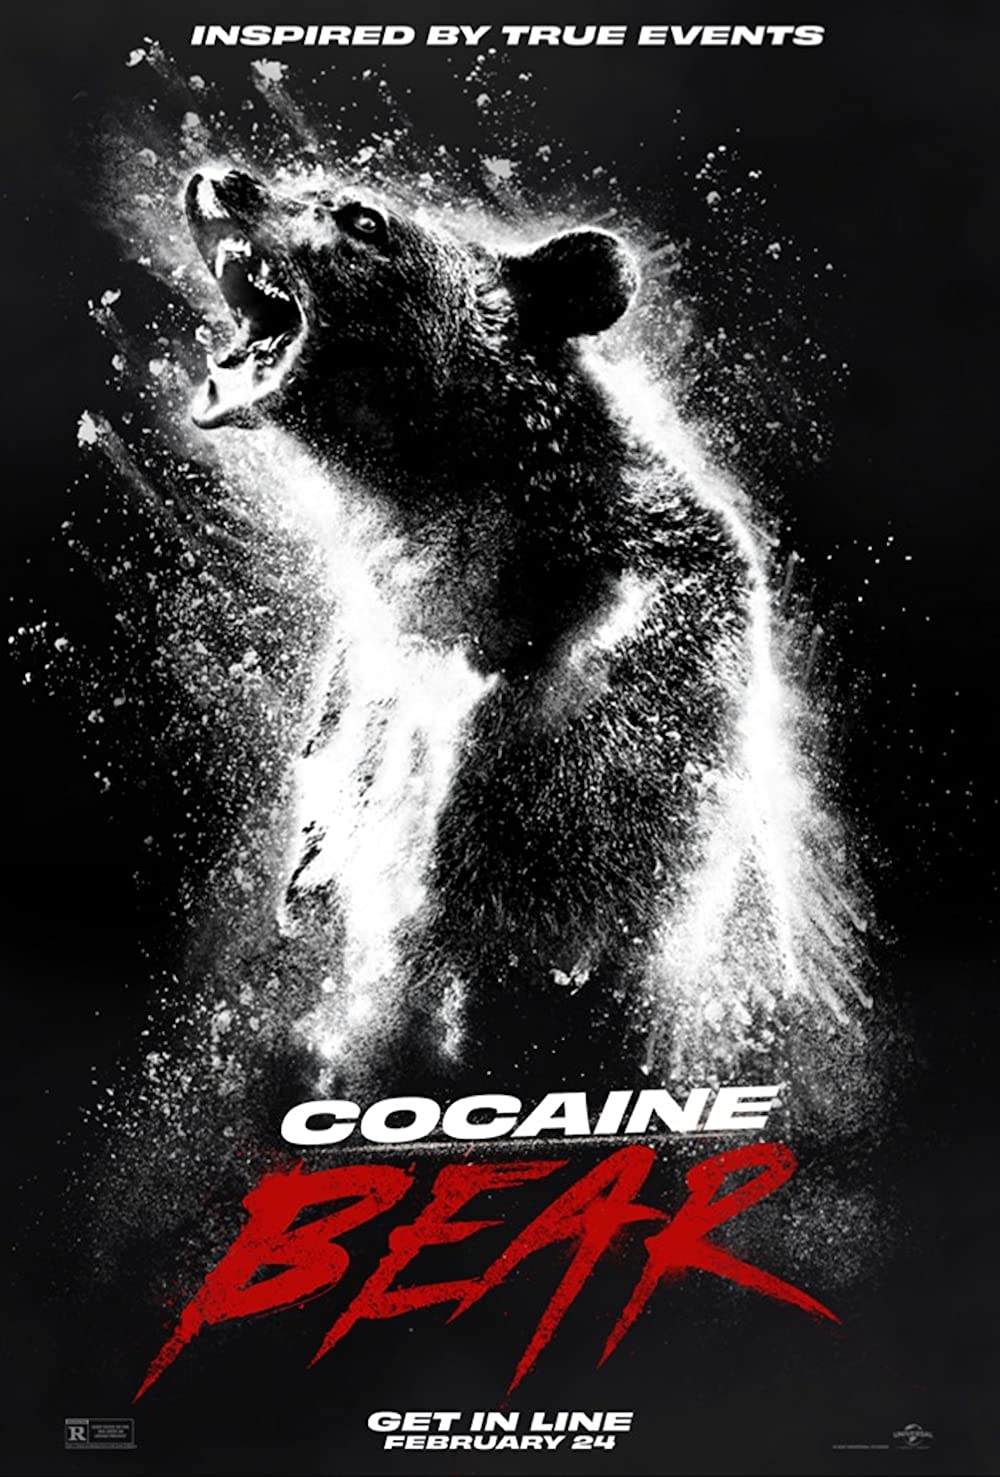 COCAINE BEAR (2023) หมีคลั่ง ซับไทย